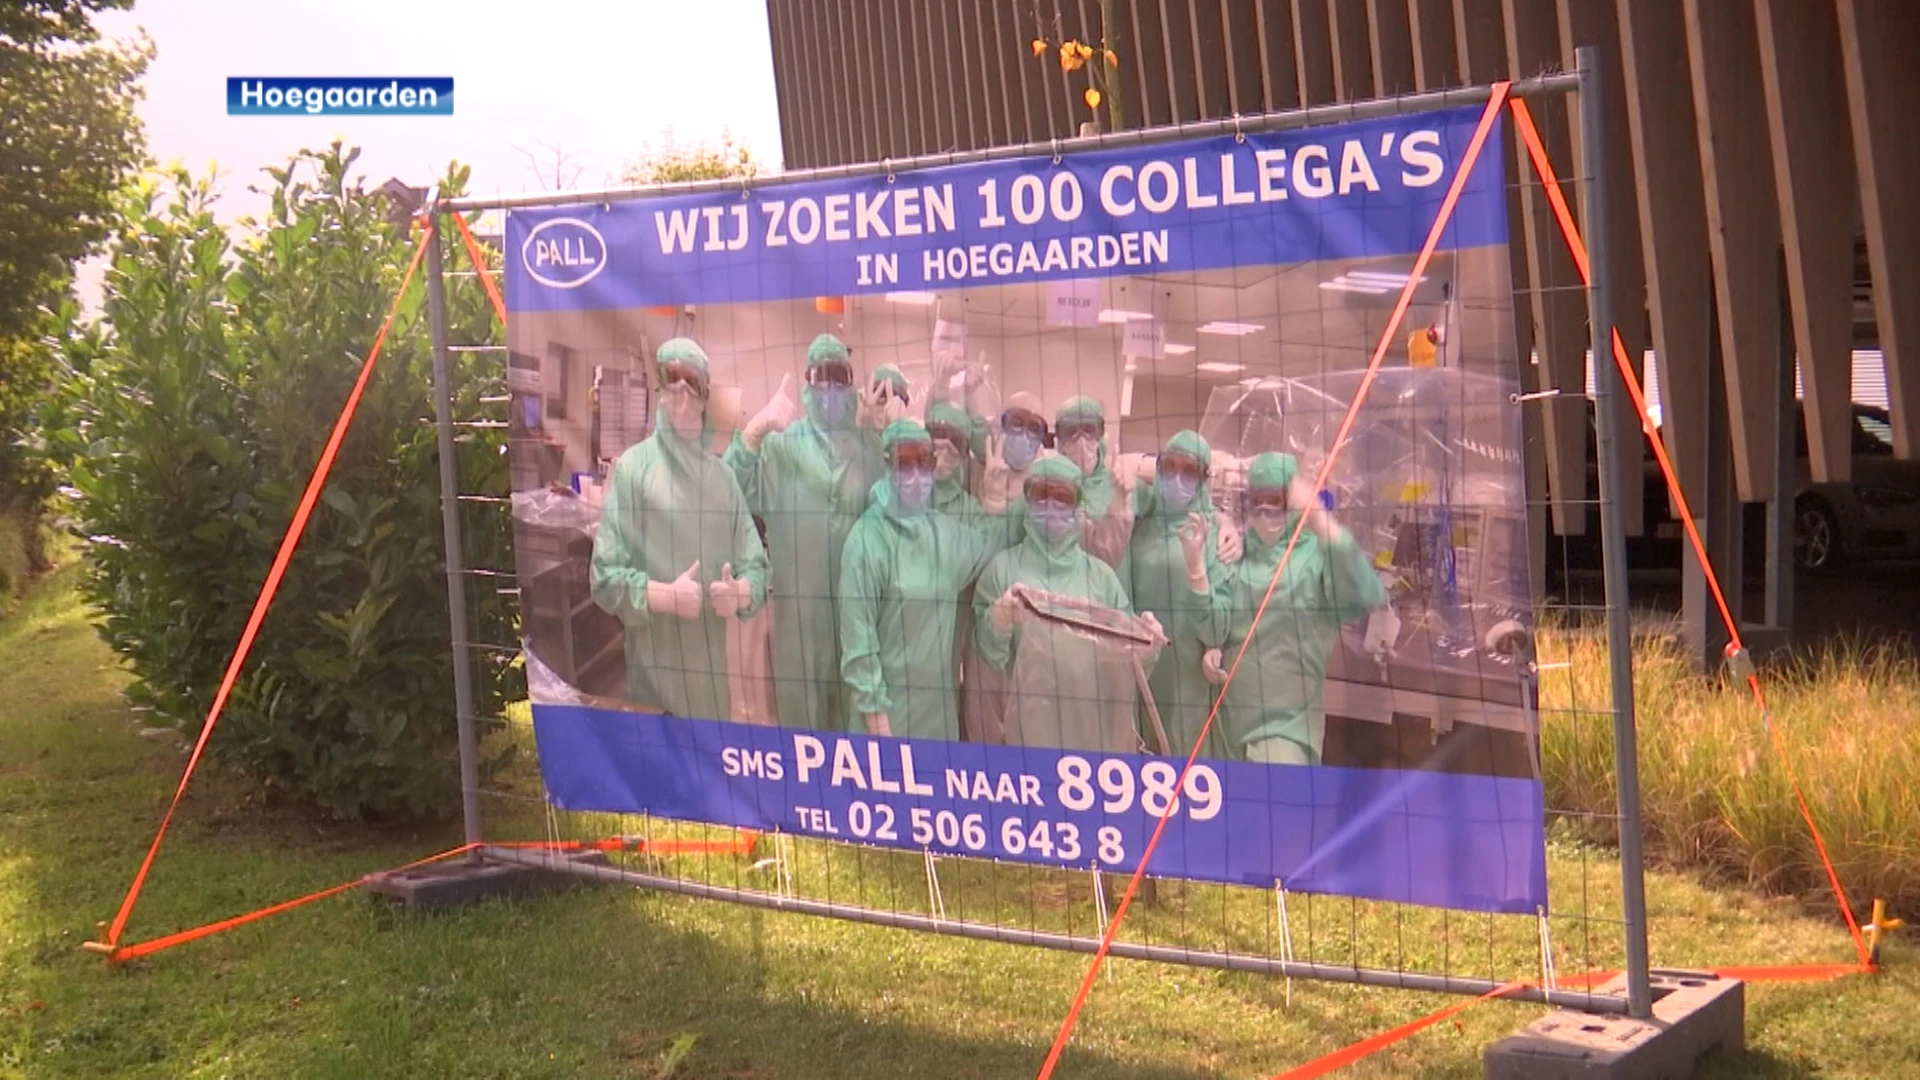 Er verdwijnen mogelijk tientallen jobs bij Pall Life Sciences in Hoegaarden: "Interimcontracten worden als vuilzakken op straat gezet"